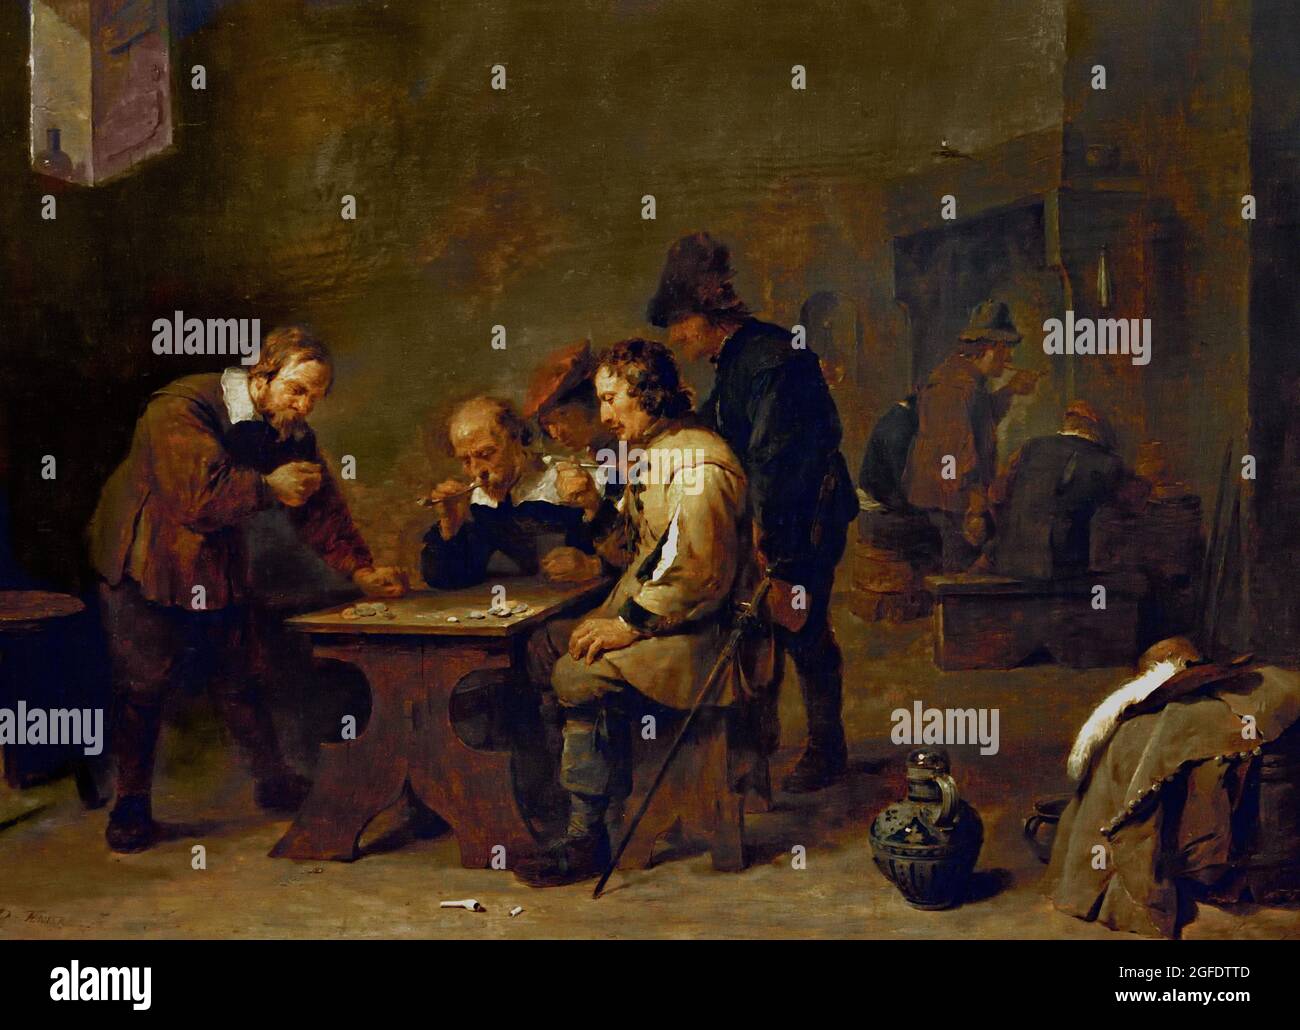 The Gamblers, David Teniers (II), 1640 Öl auf Tafel 45,2 cm × 59,1cm Belgisch Belgien Flämisch zwei Männer der Mittelschicht und ein Offizier werden in ihr Spiel absorbiert. Zwei Bauern schauen zu. Der Mann, der links steht, ist gerade dabei, die Würfel zu werfen. Glücksspiele, an denen Geld beteiligt war, wurden von der Kanzel aus denunziert. Doch hier, Teniers nein, zeichnet er einfach die Szene auf. Stockfoto